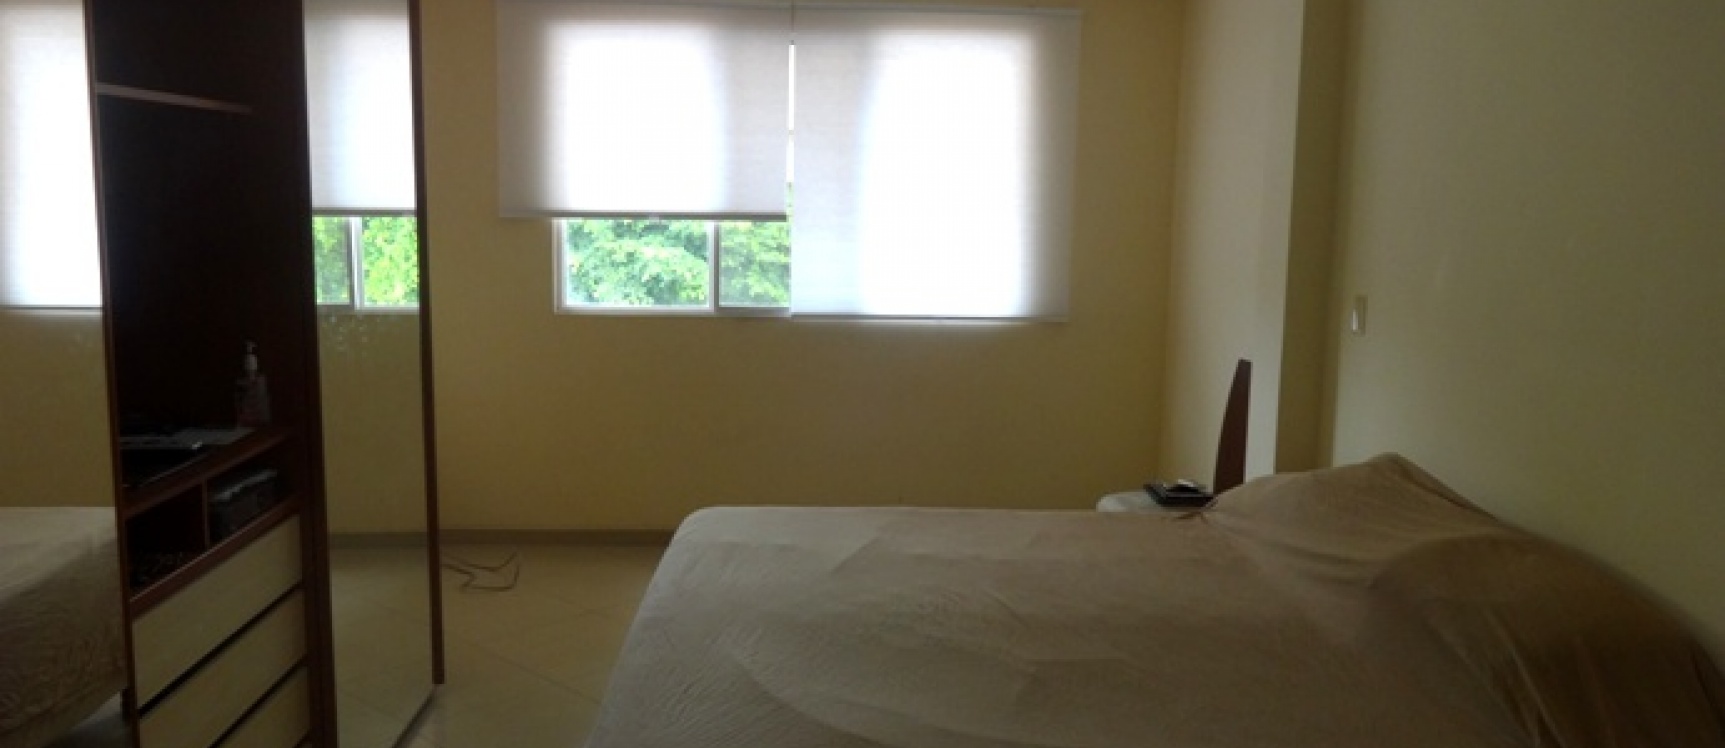 GeoBienes - Casa en venta Via a la Costa Guayaquil, vendo una casa en Portal al sol - Plusvalia Guayaquil Casas de venta y alquiler Inmobiliaria Ecuador